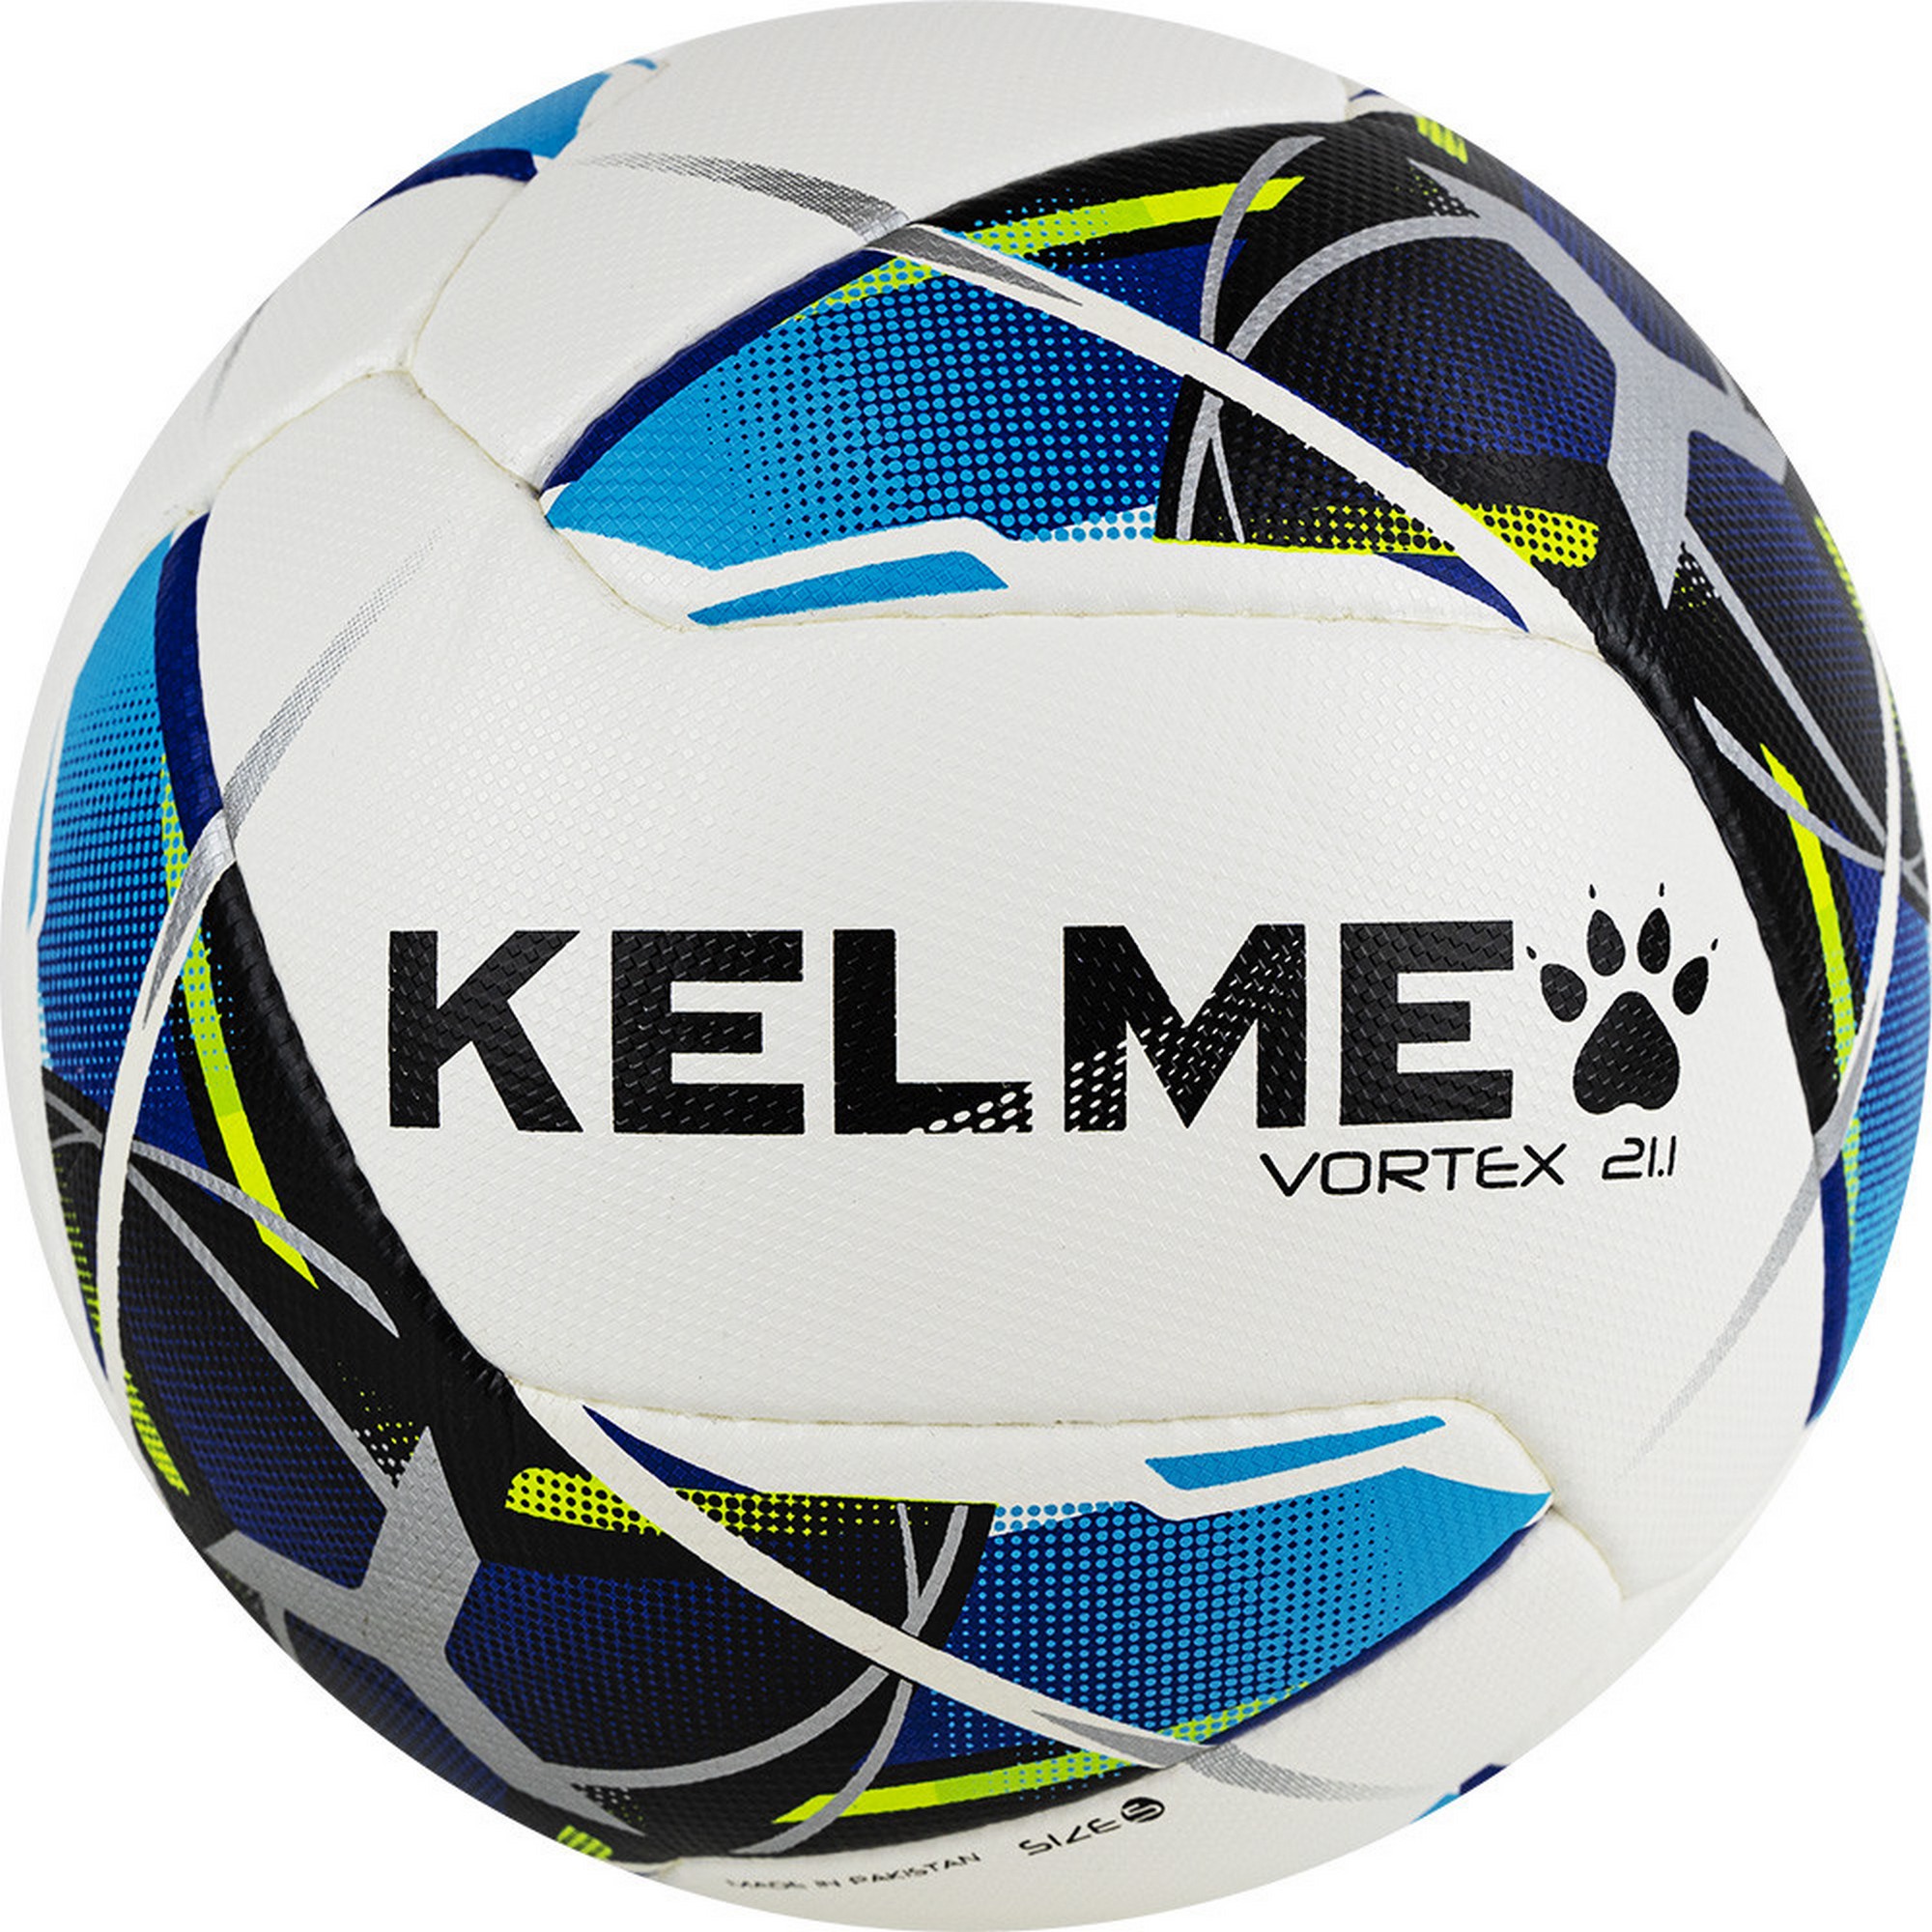 Купить Мяч футбольный Kelme Vortex 21.1, 8101QU5003-113 р.5,